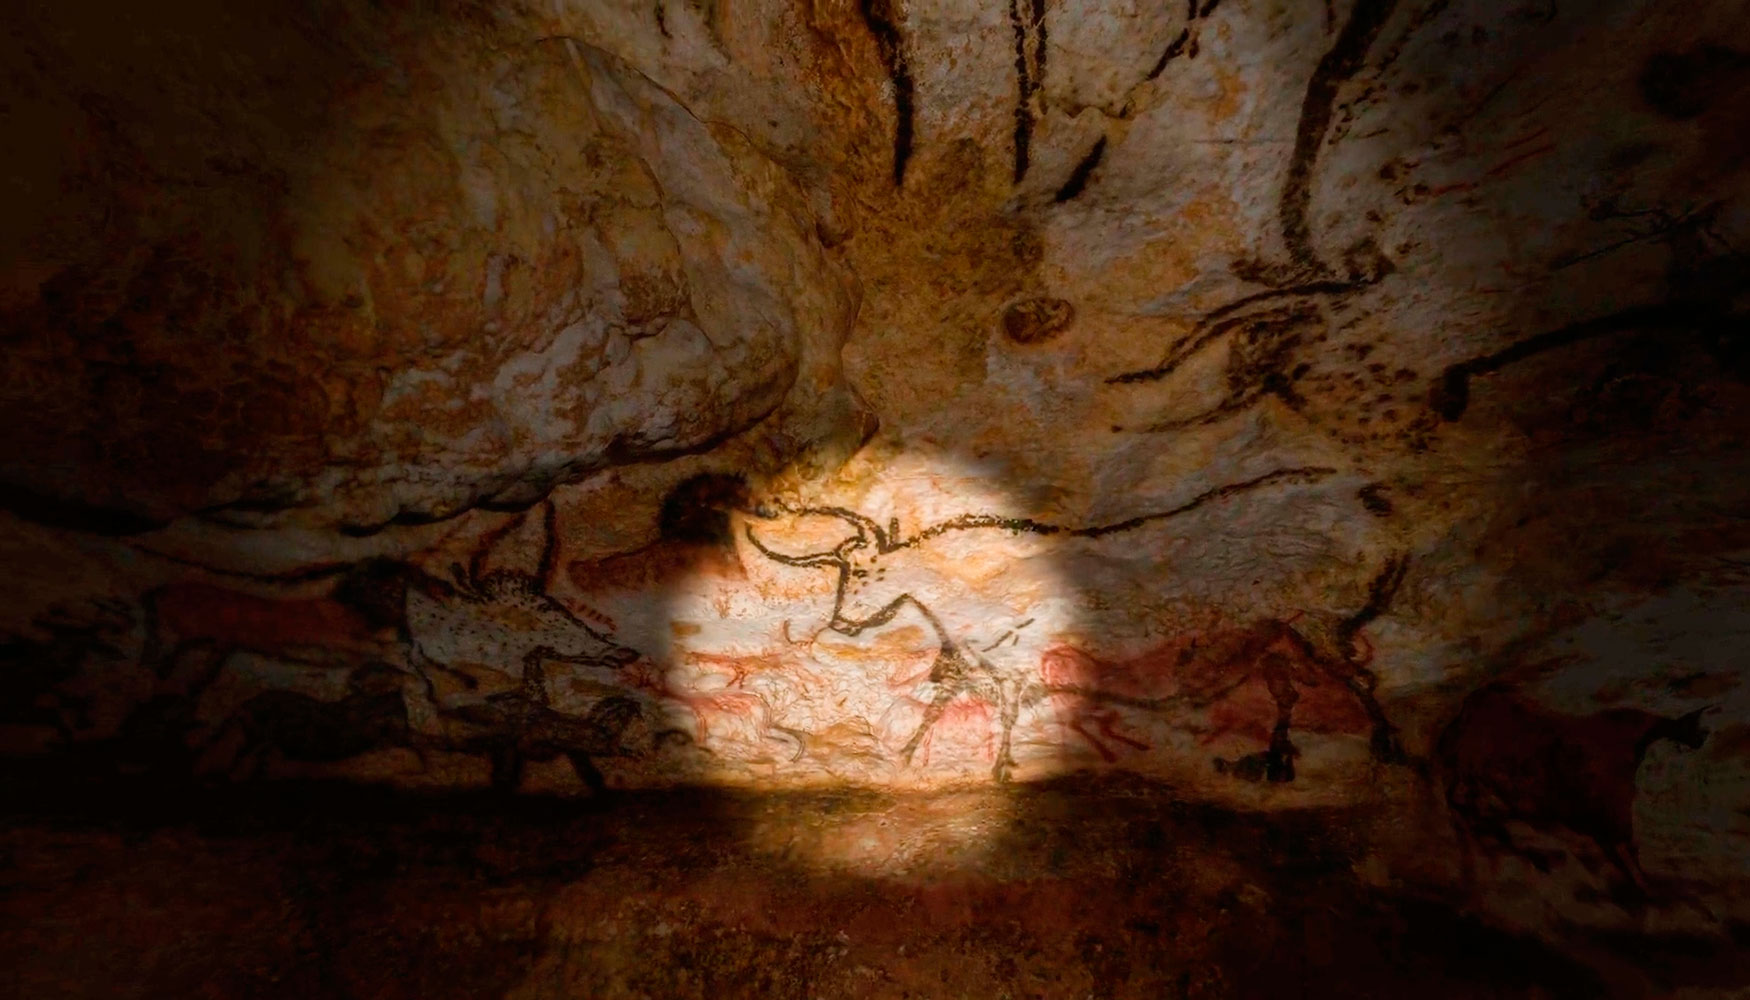 Cerrada permanentemente al pblico desde 1963, la cueva de Lascaux ha sido declarada patrimonio mundial de la UNESCO en 1979...